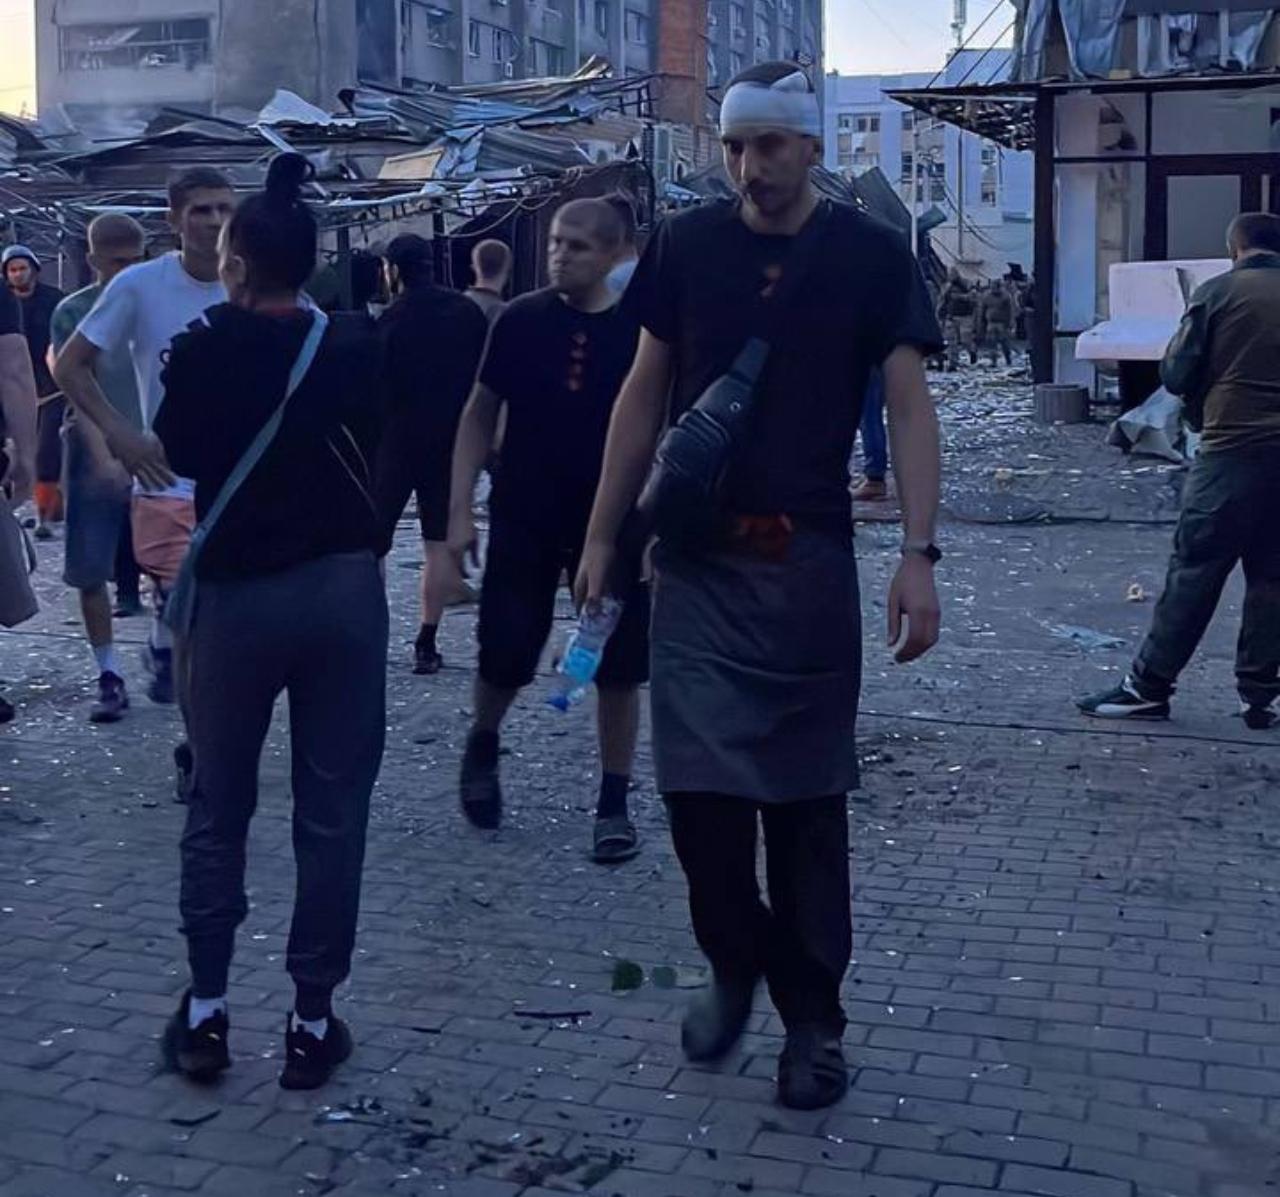 Ukrajinske vlasti: Rusi su pogodili restoran pun ljudi  - Ukrajinci tvrde: Rusi pogodili restoran pun ljudi 